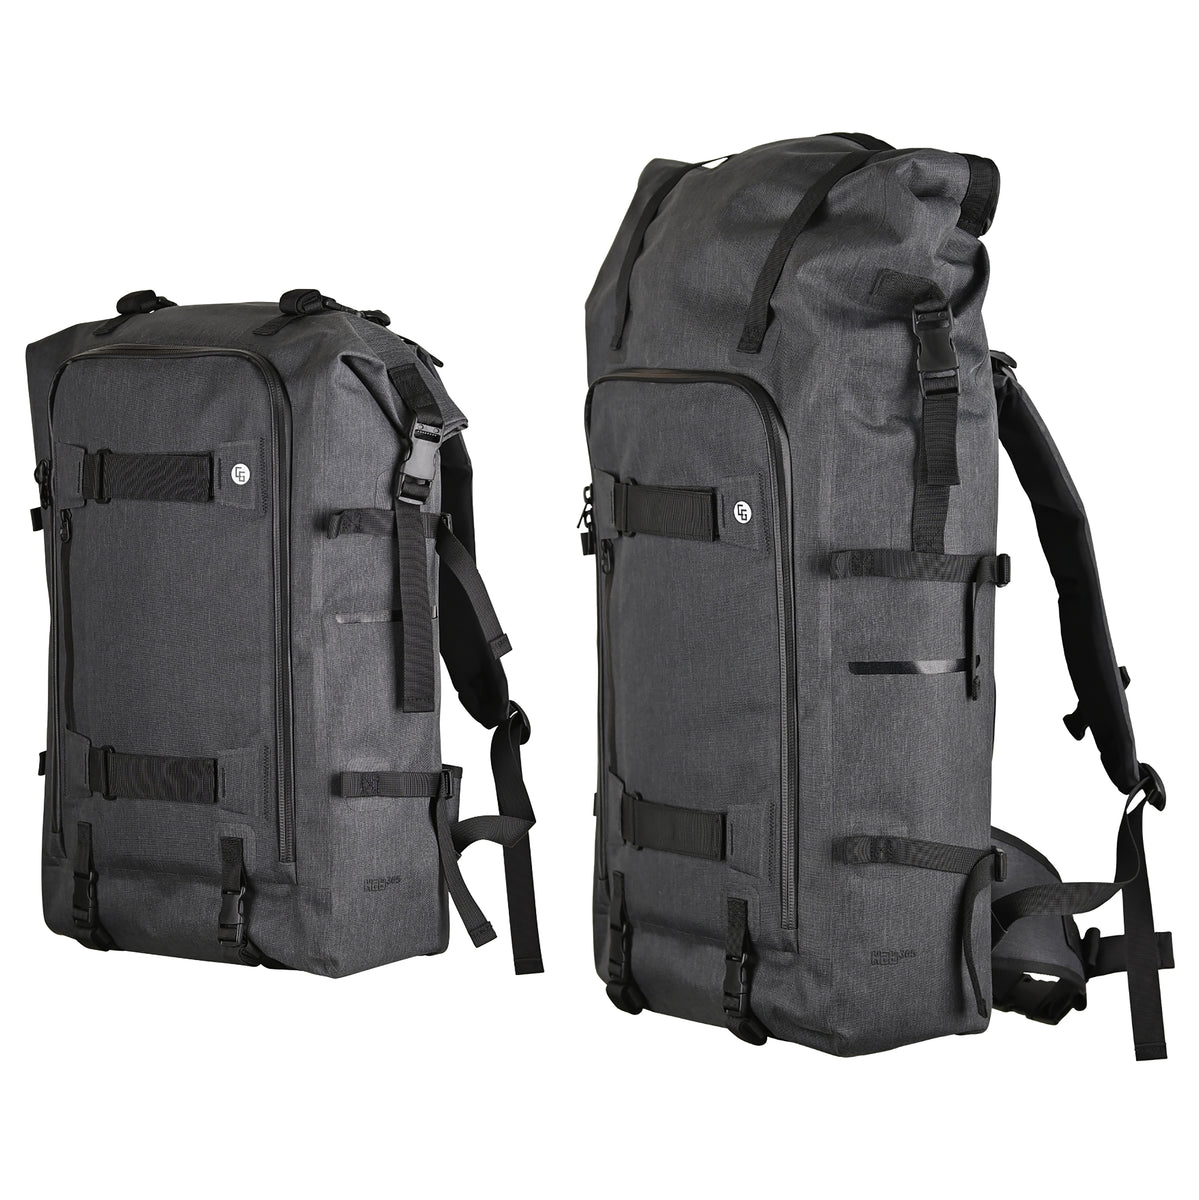 Heavy-Duty Convertible Travel Backpack - CG Habitats